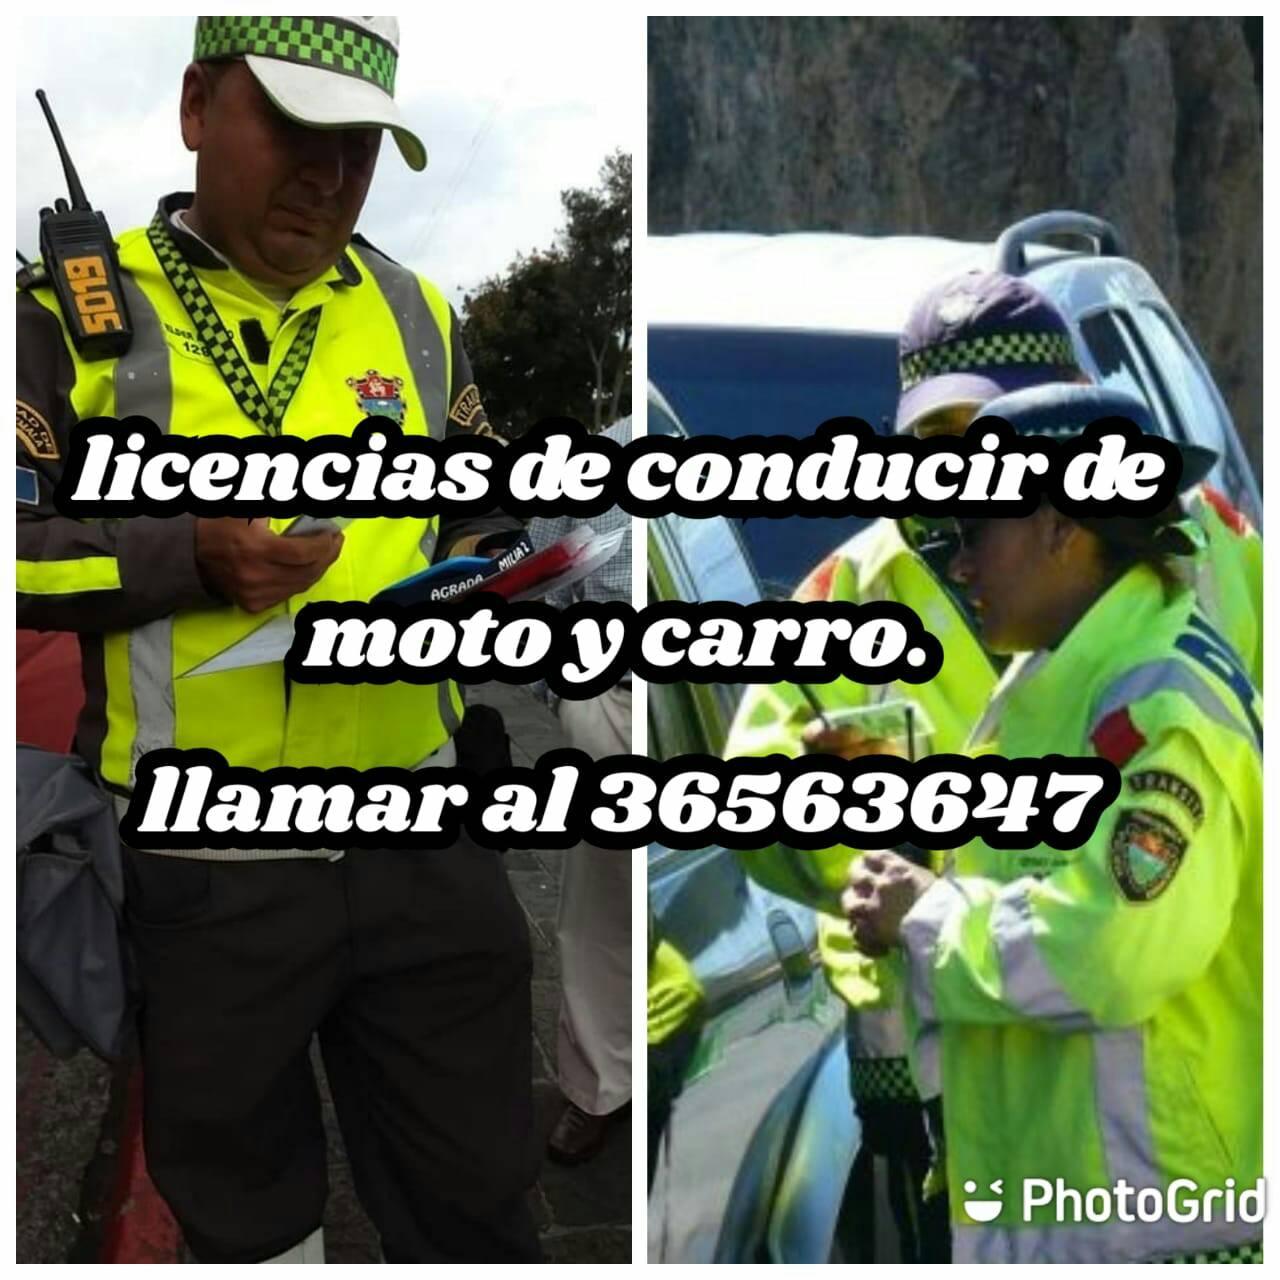 licencias de conducir de carro o moto
 Obten tu primera licencia de carro o moto…